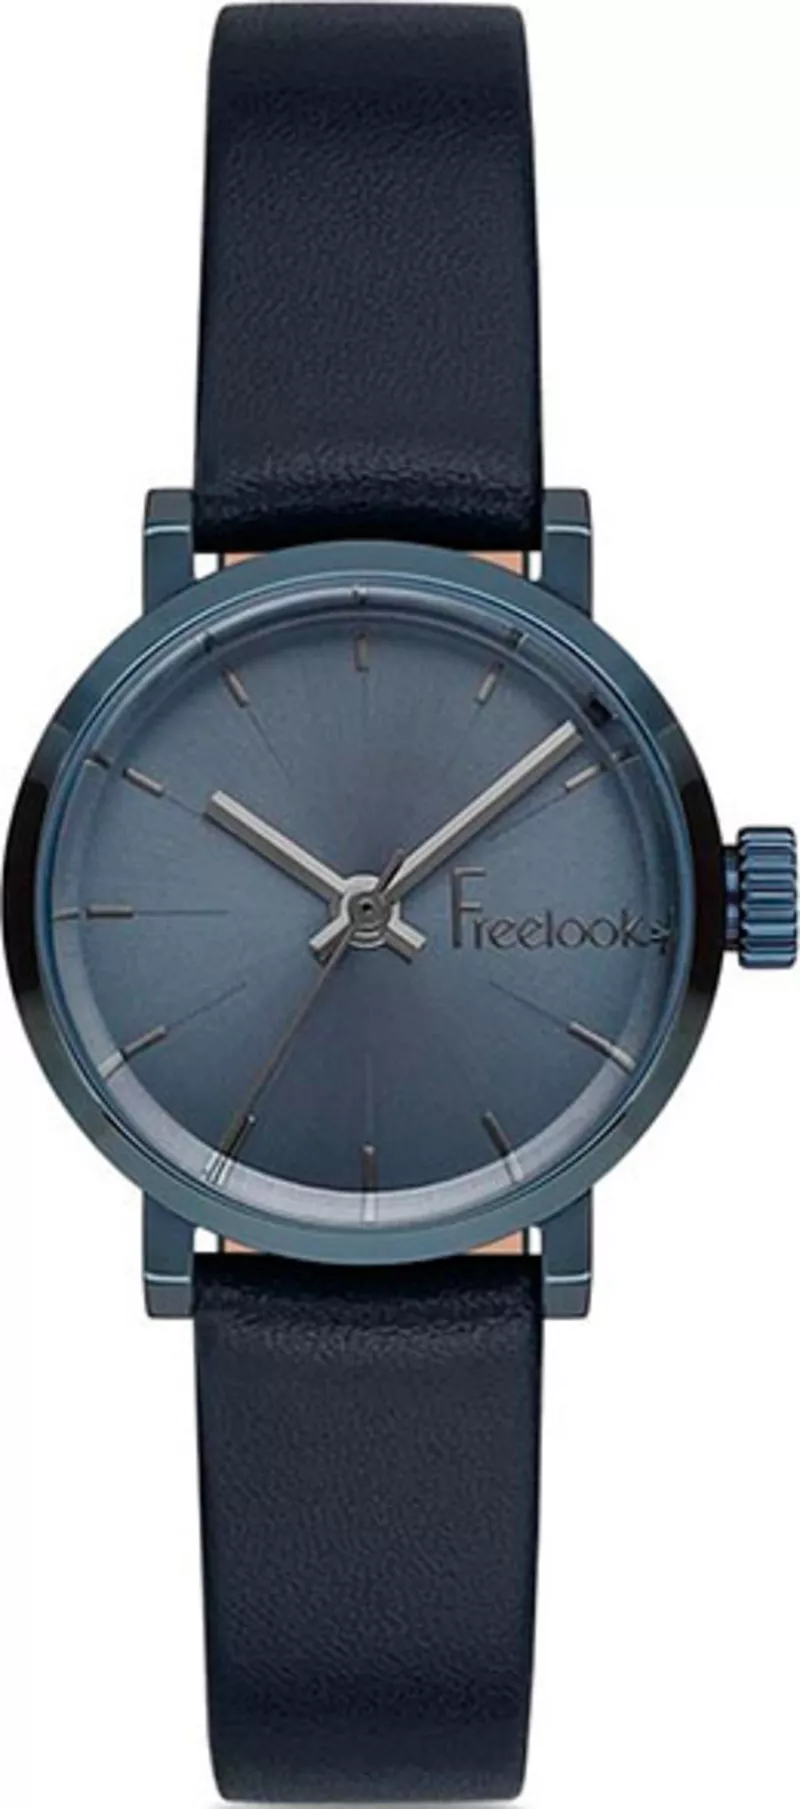 Часы Freelook F.1.1099.01